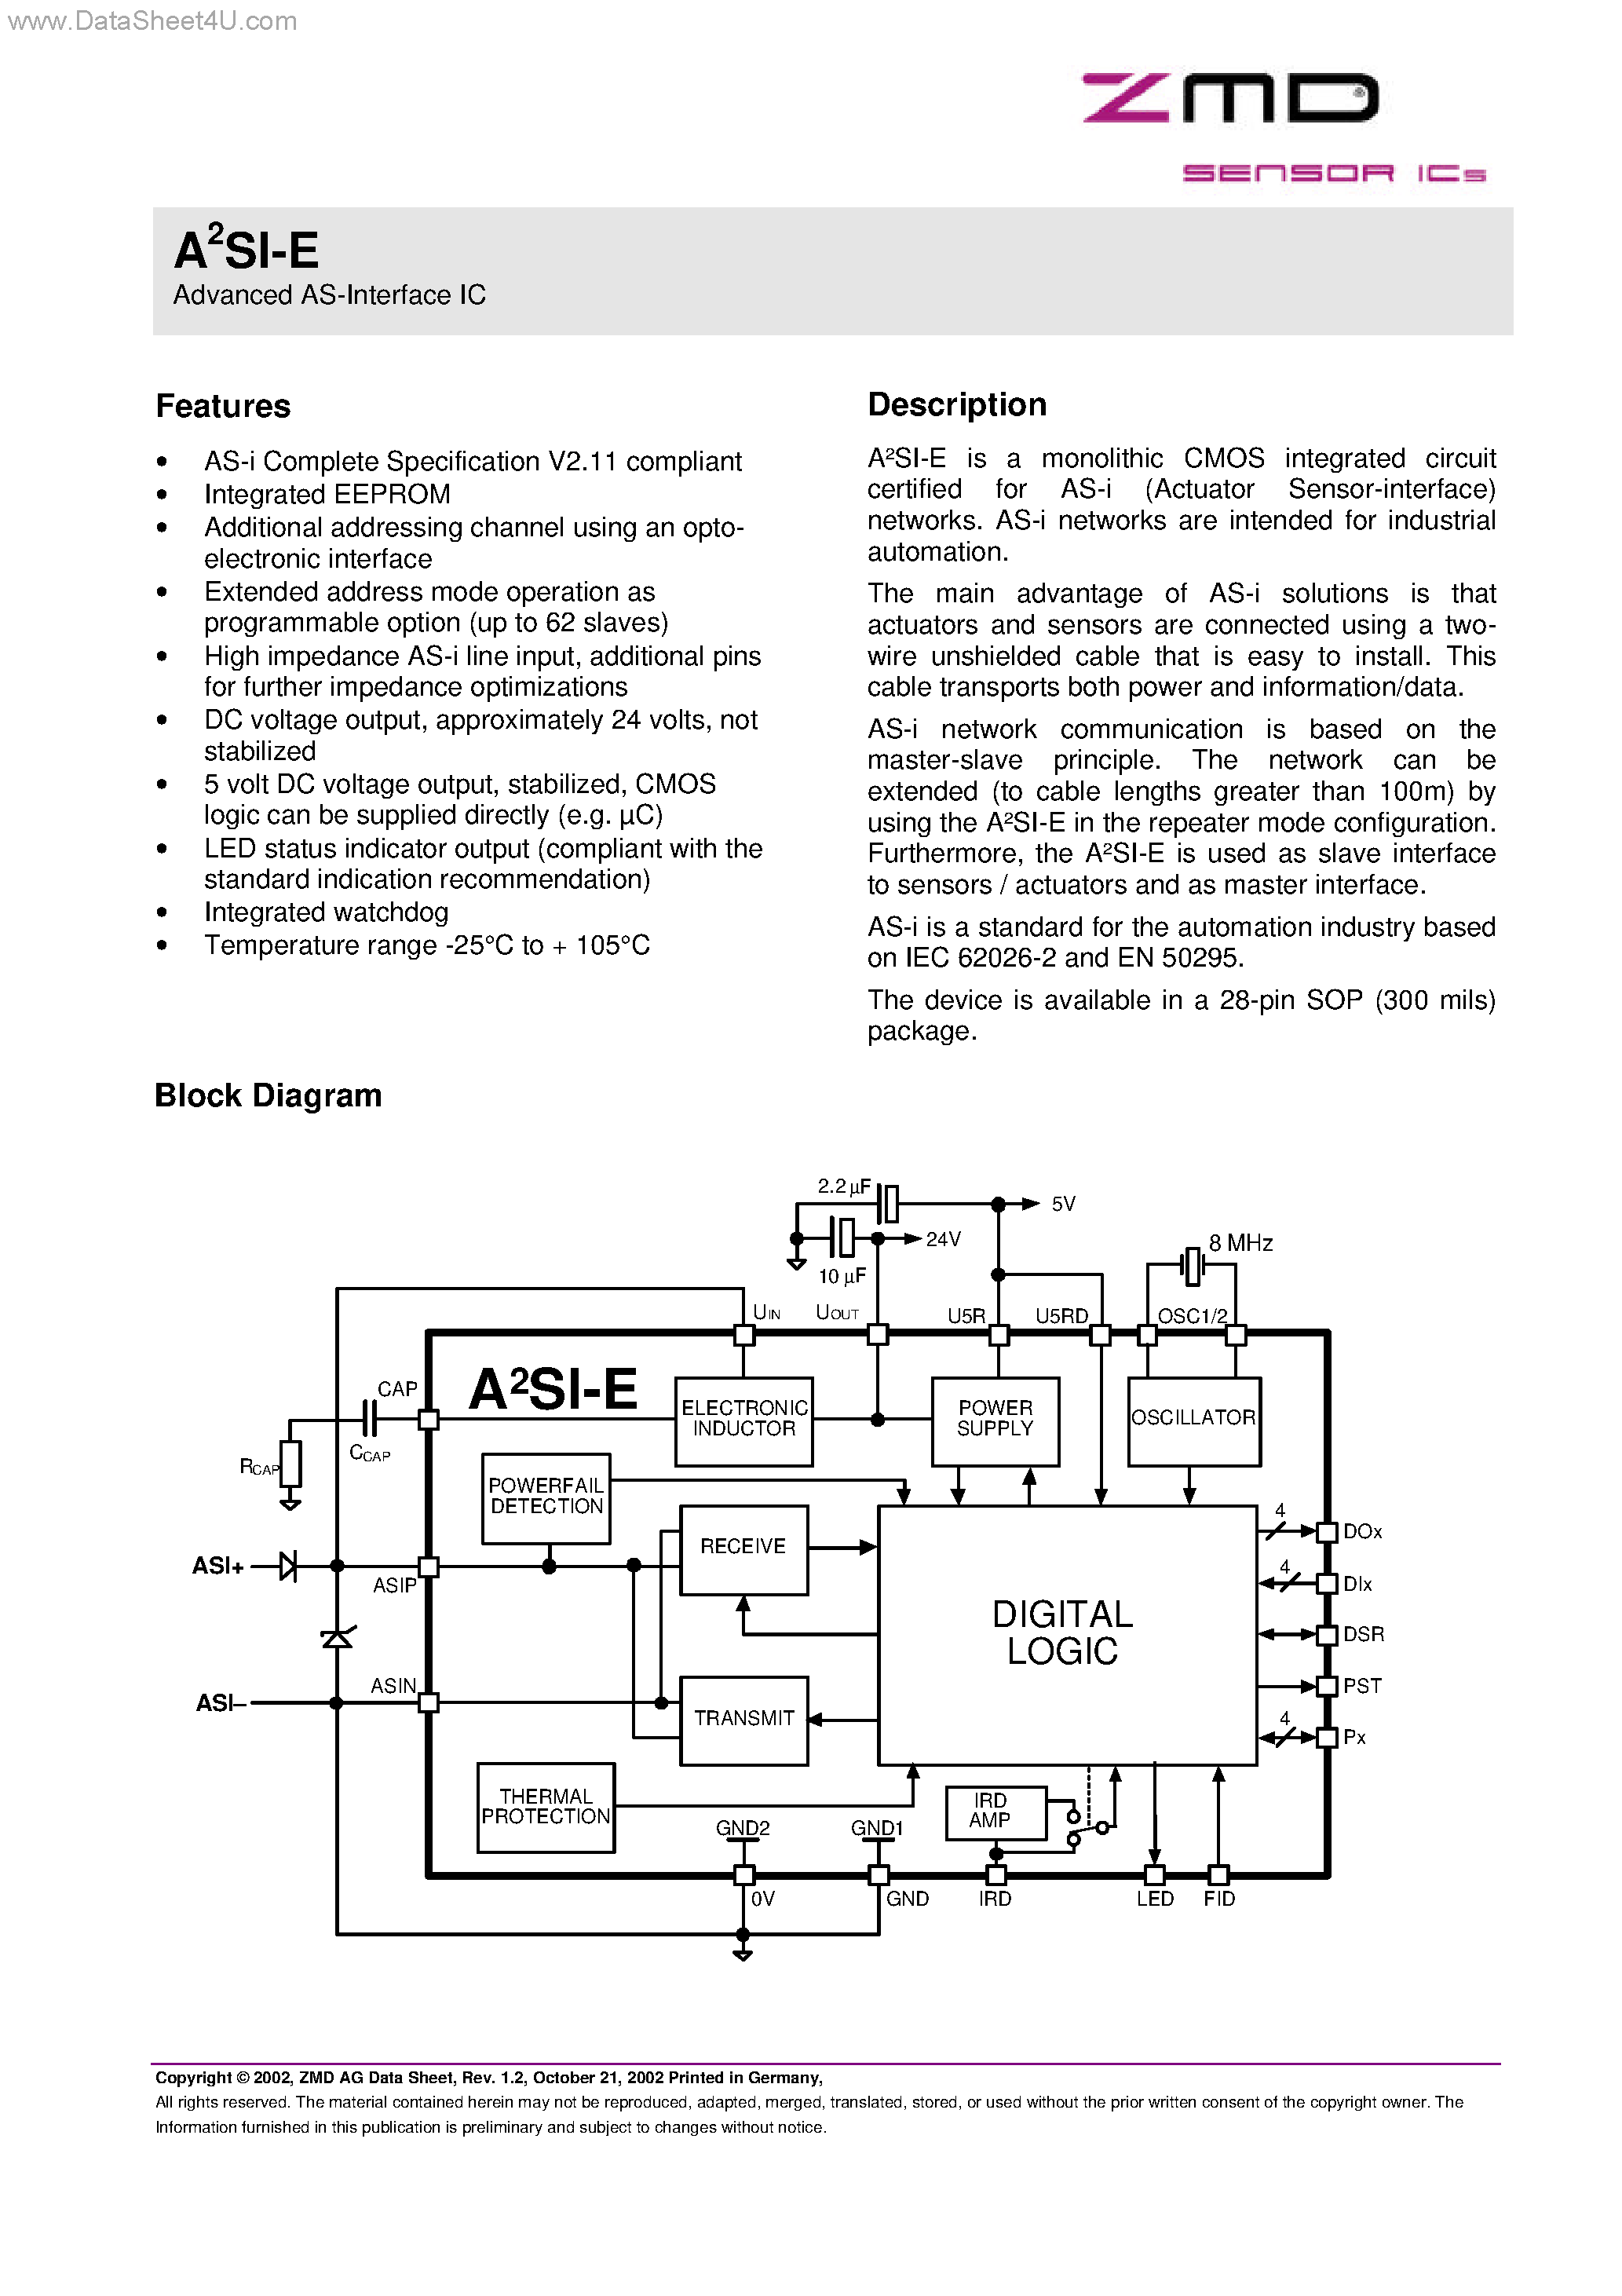 Даташит A2SI-E - Advanced AS-Interface IC страница 1